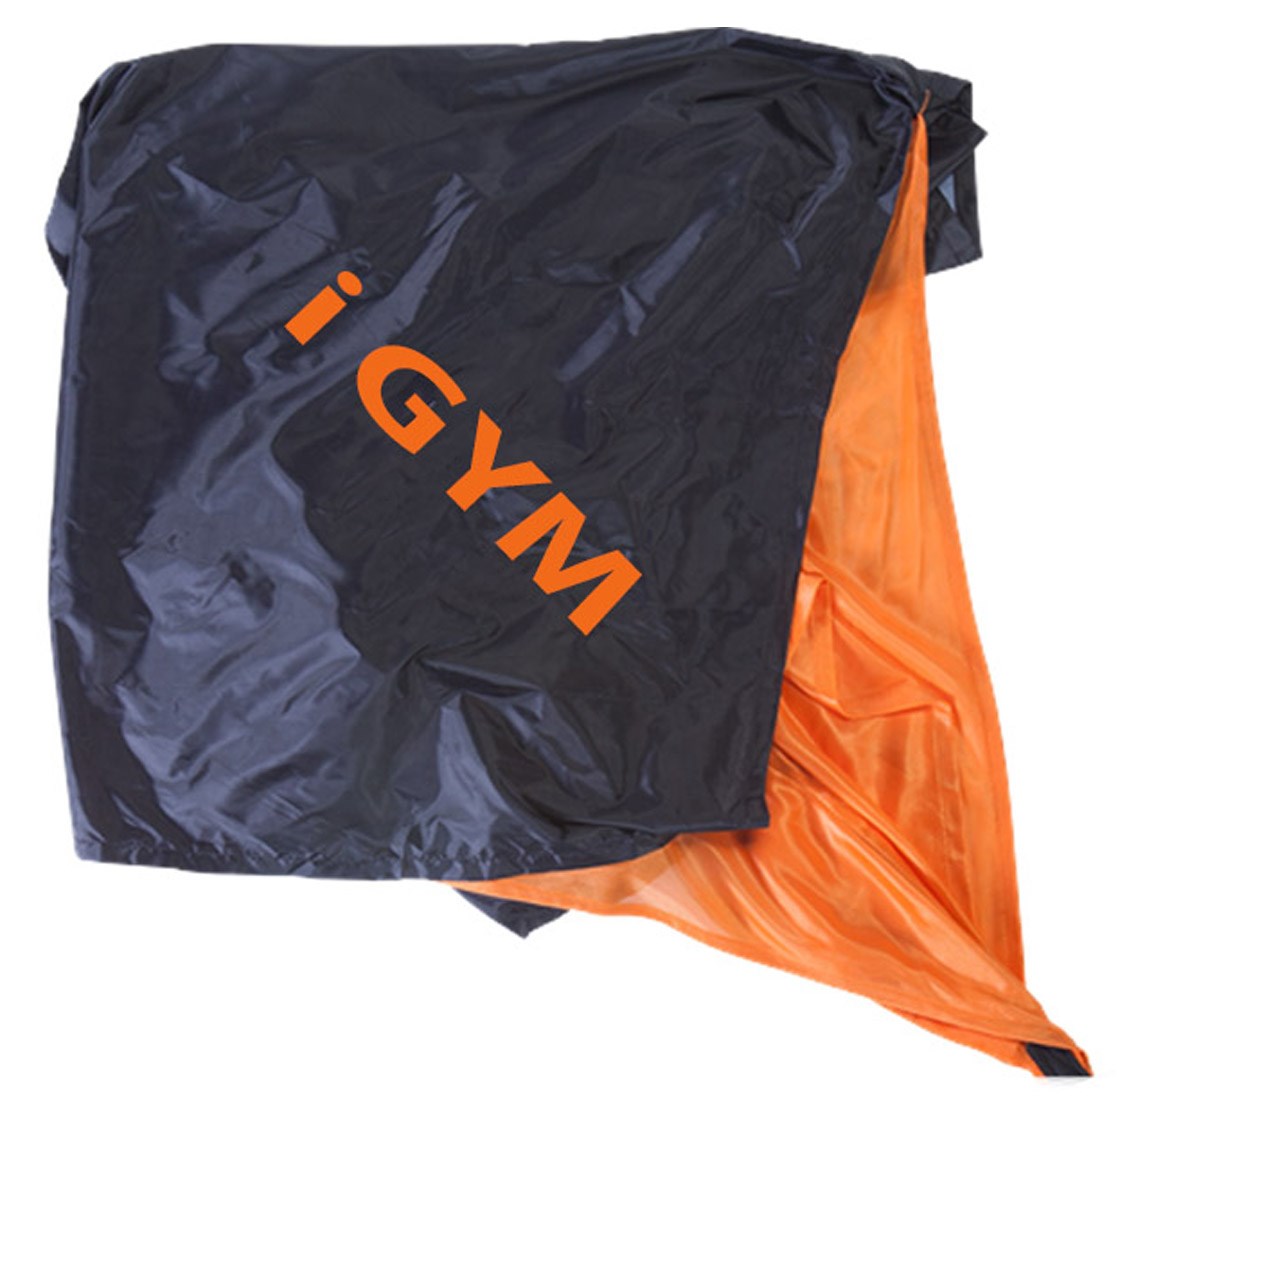 چتر استقامتی Igym مدل 0525